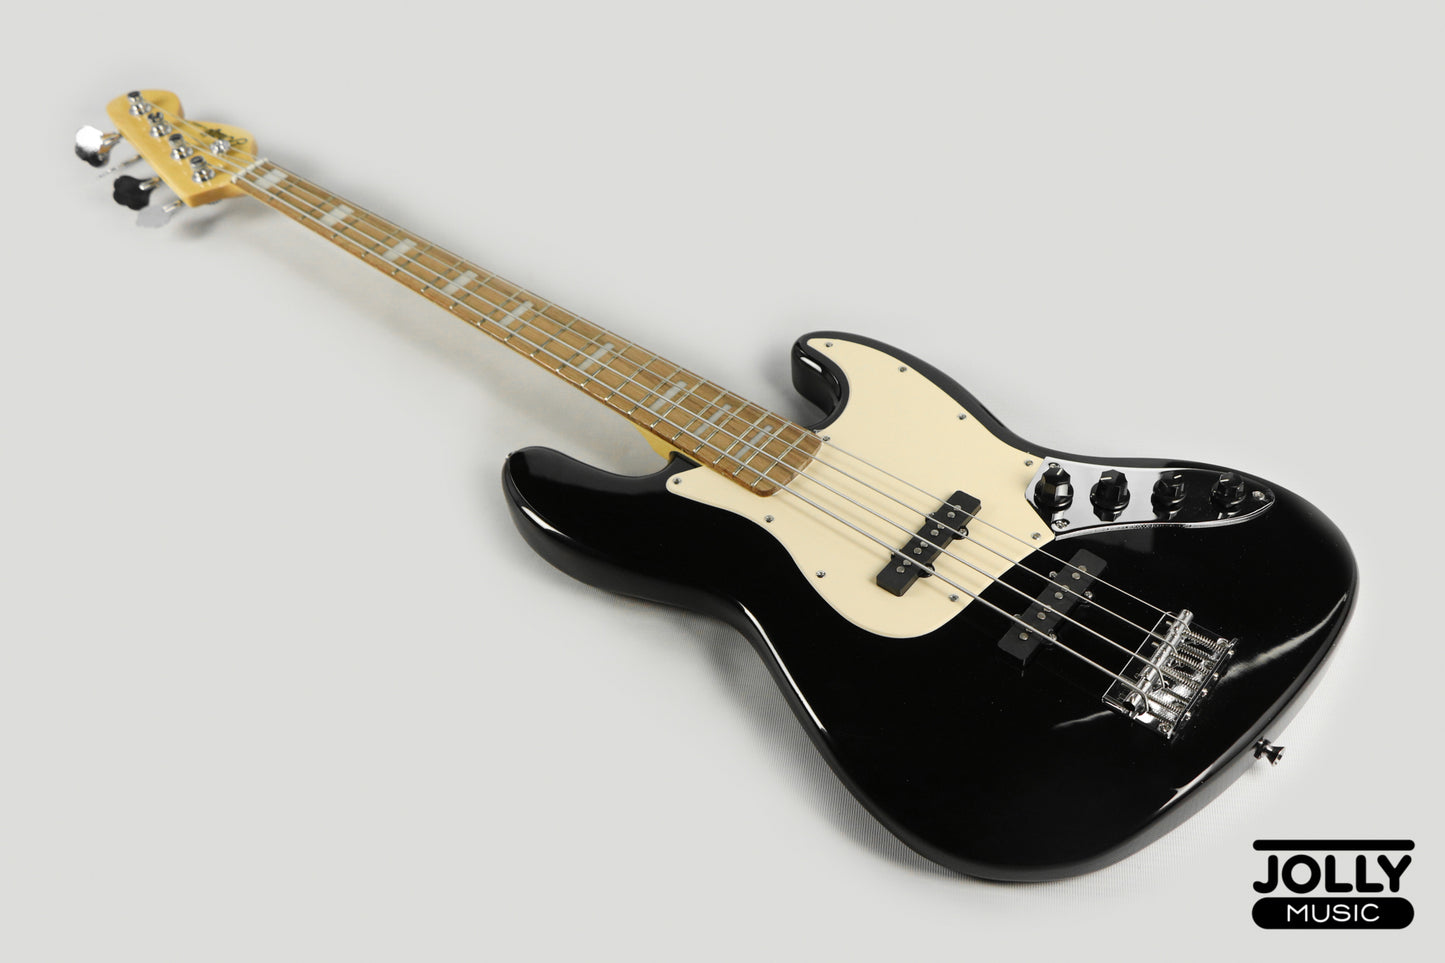 JCraft JB-2A J-Offset 4-String Bass Guitar - Black